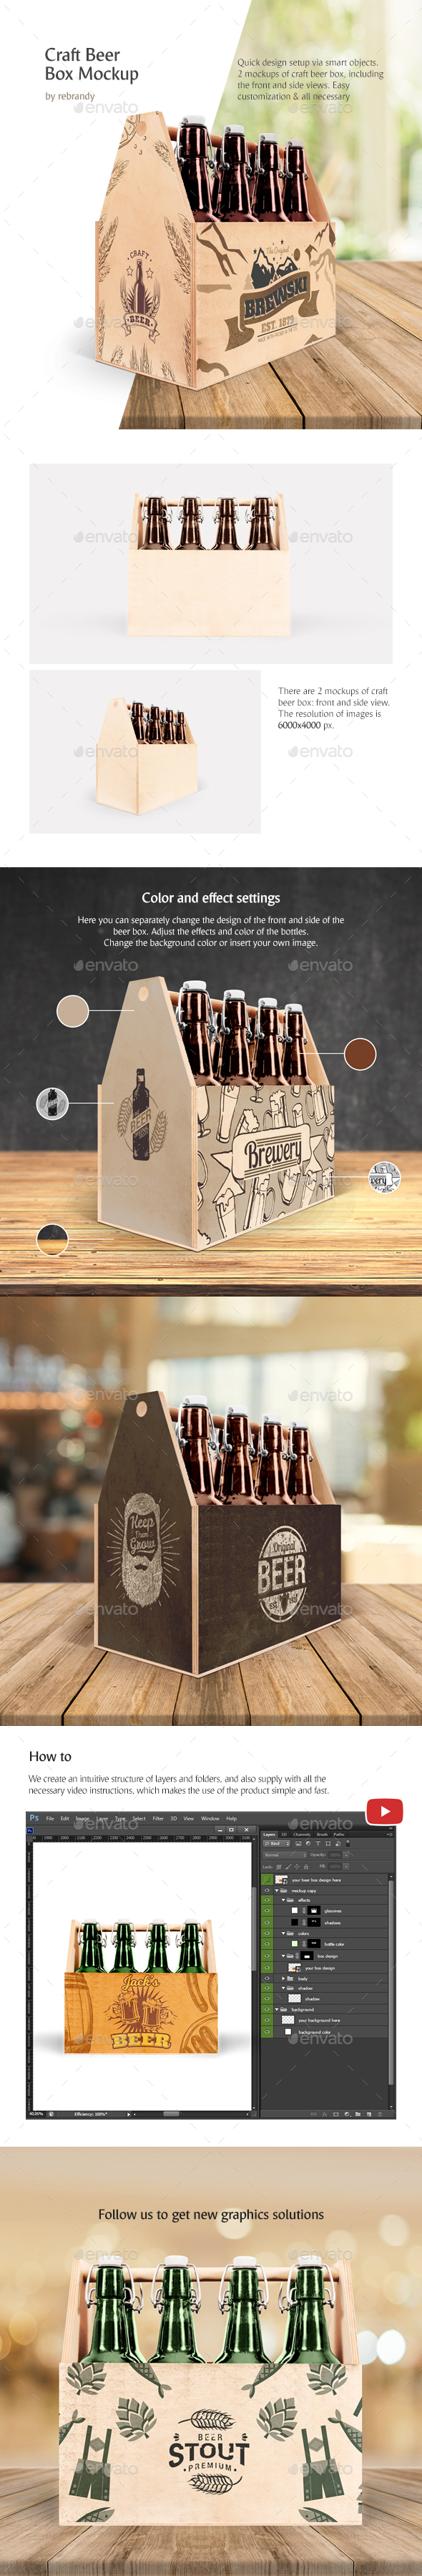 Craft Beer Box Mockup